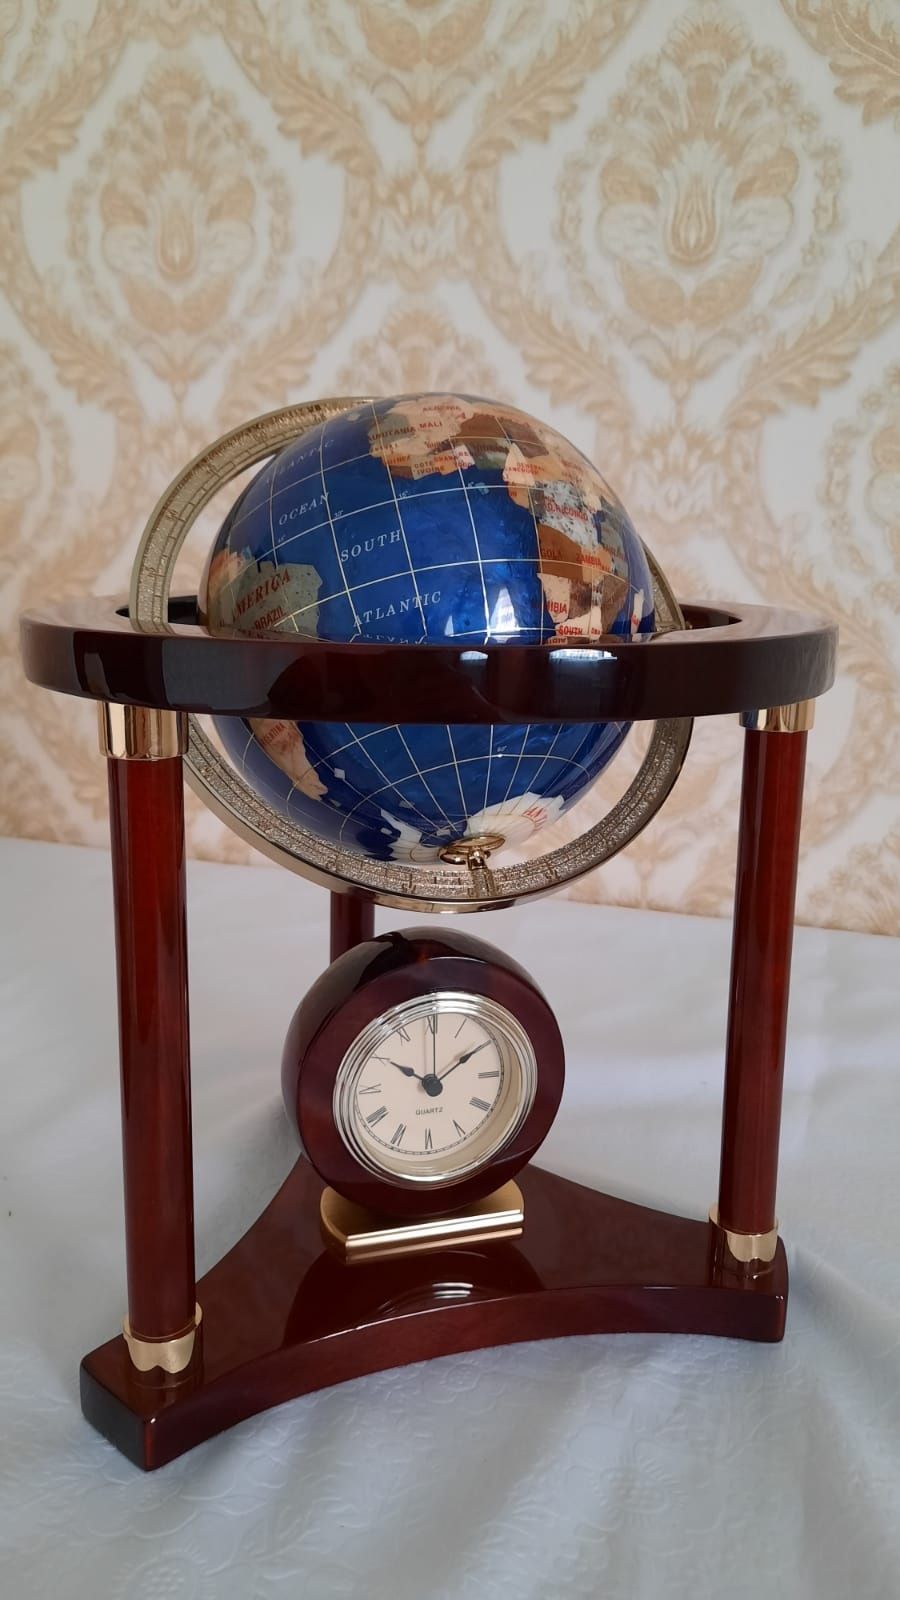 Часы с глобусом, прекрасно впишется в интерьер дома или офиса.